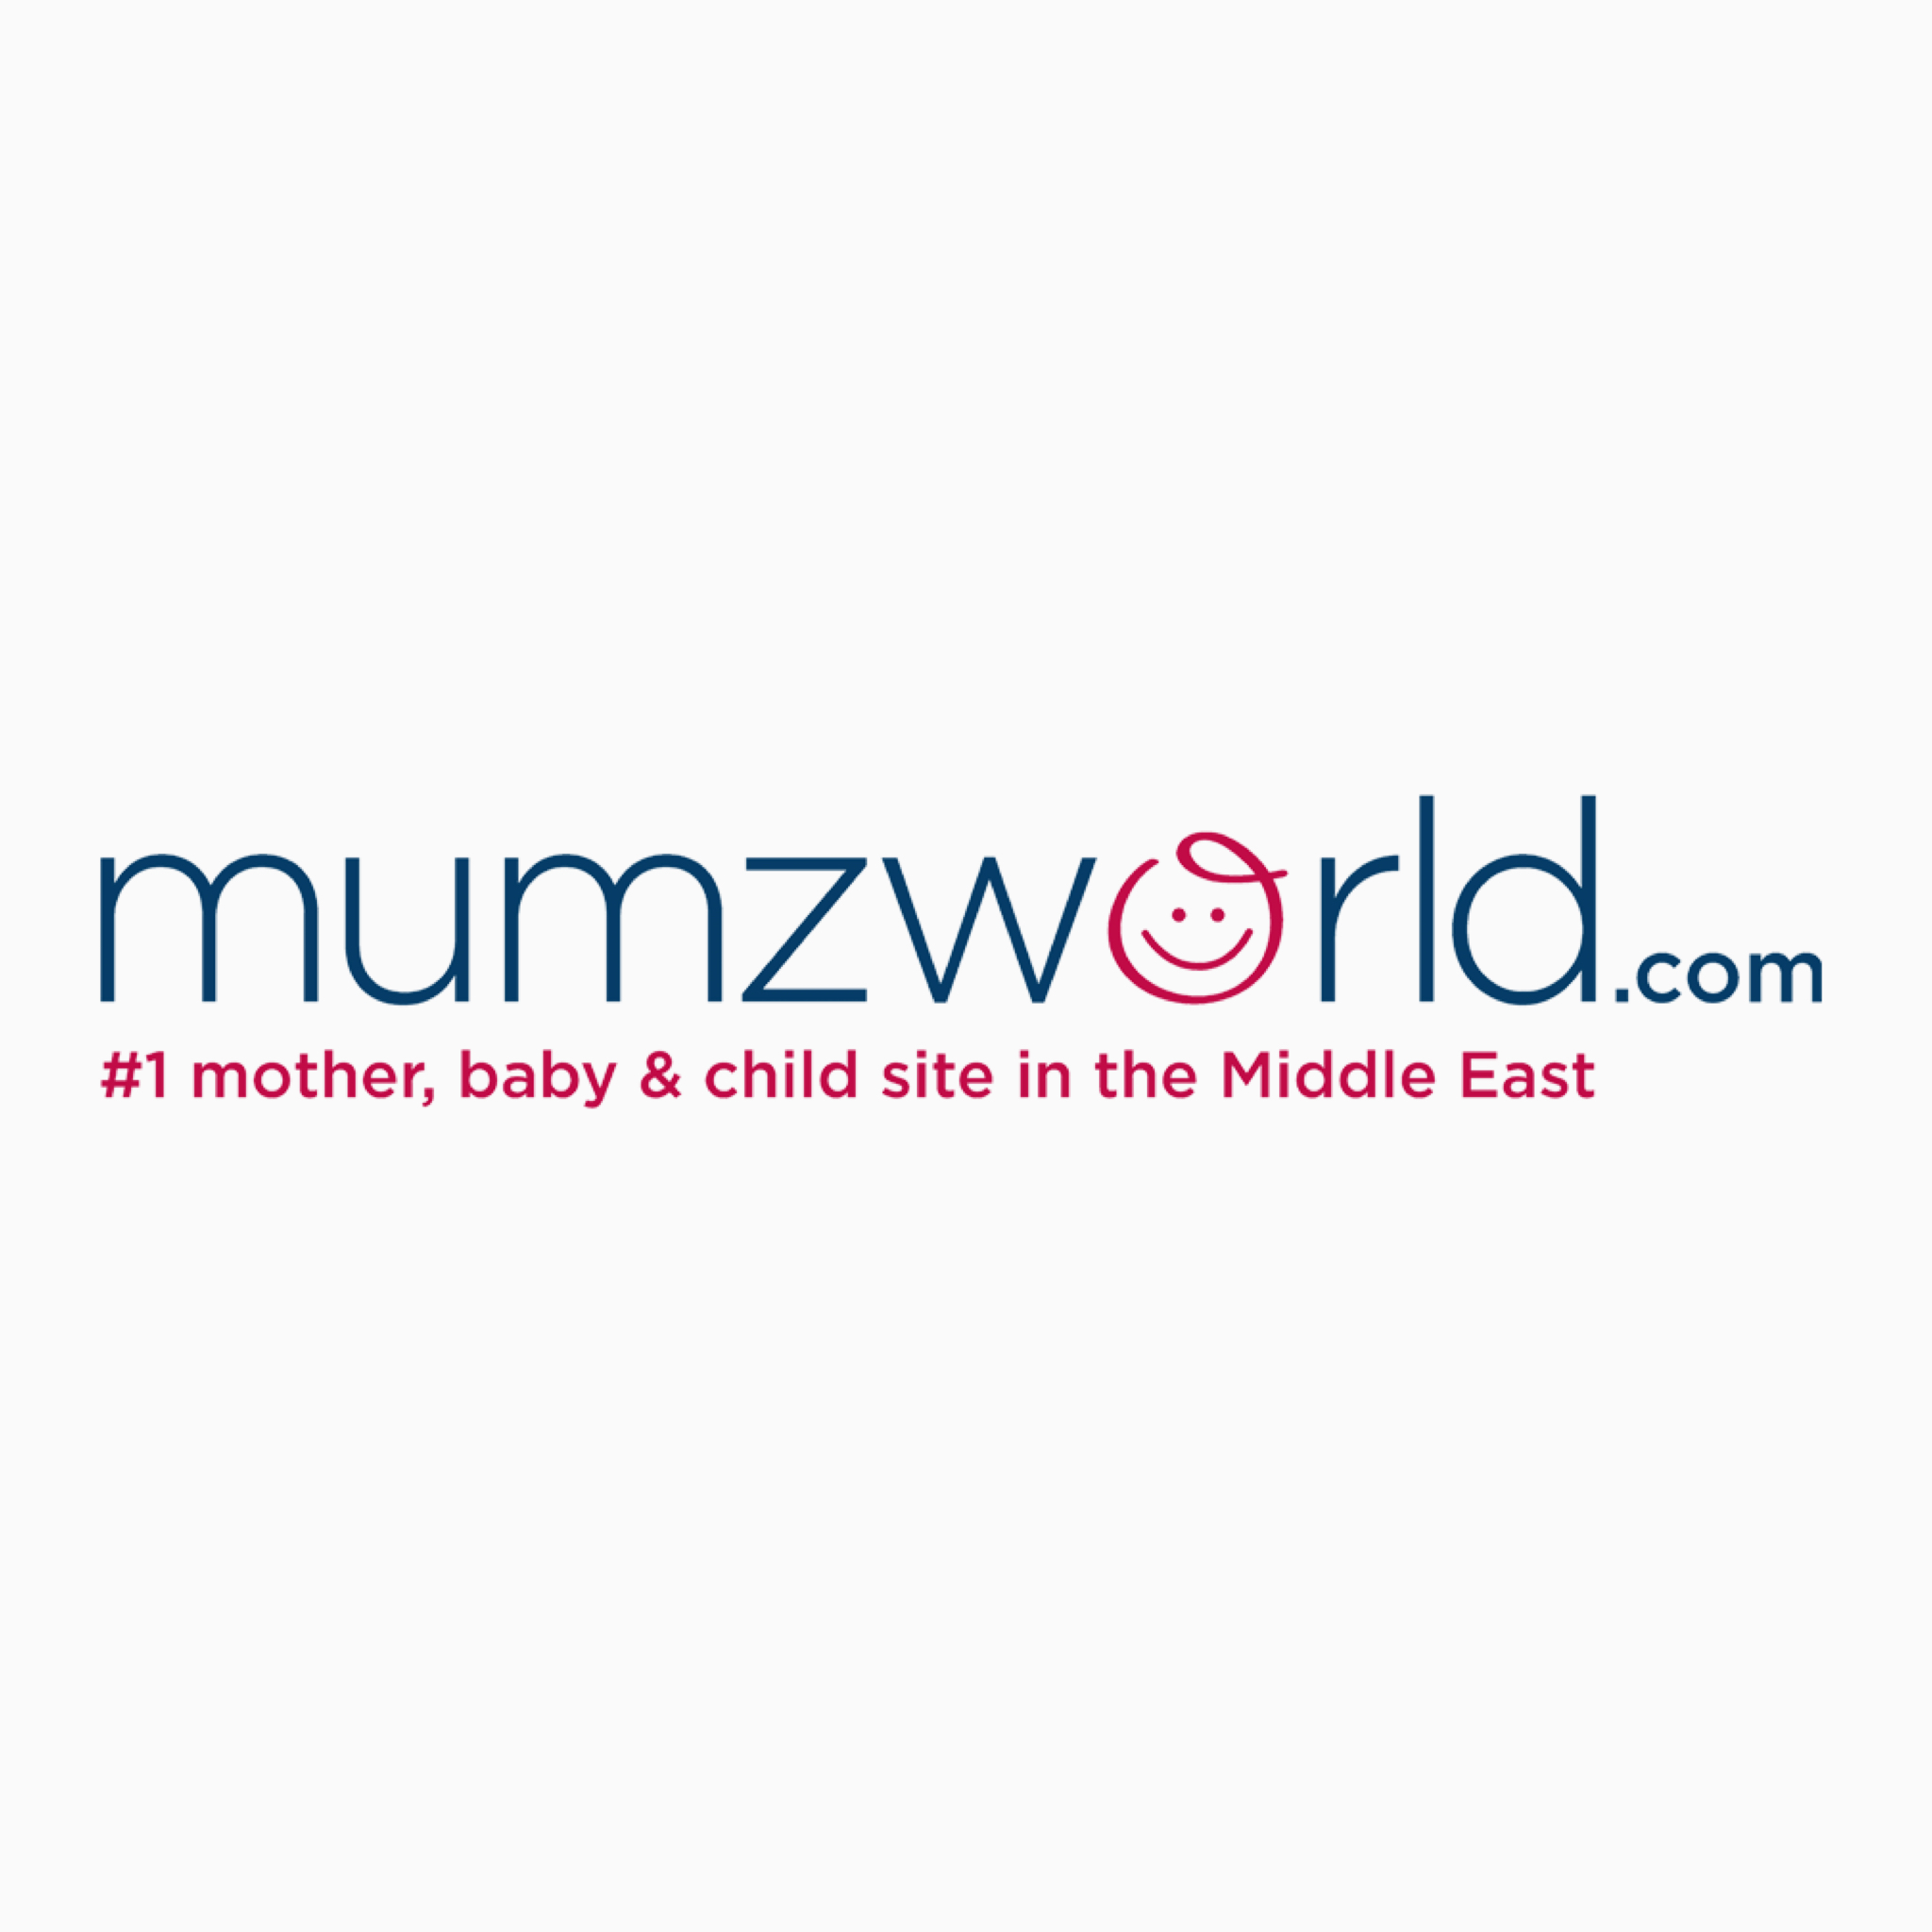 ممز ورلد | mumzworld